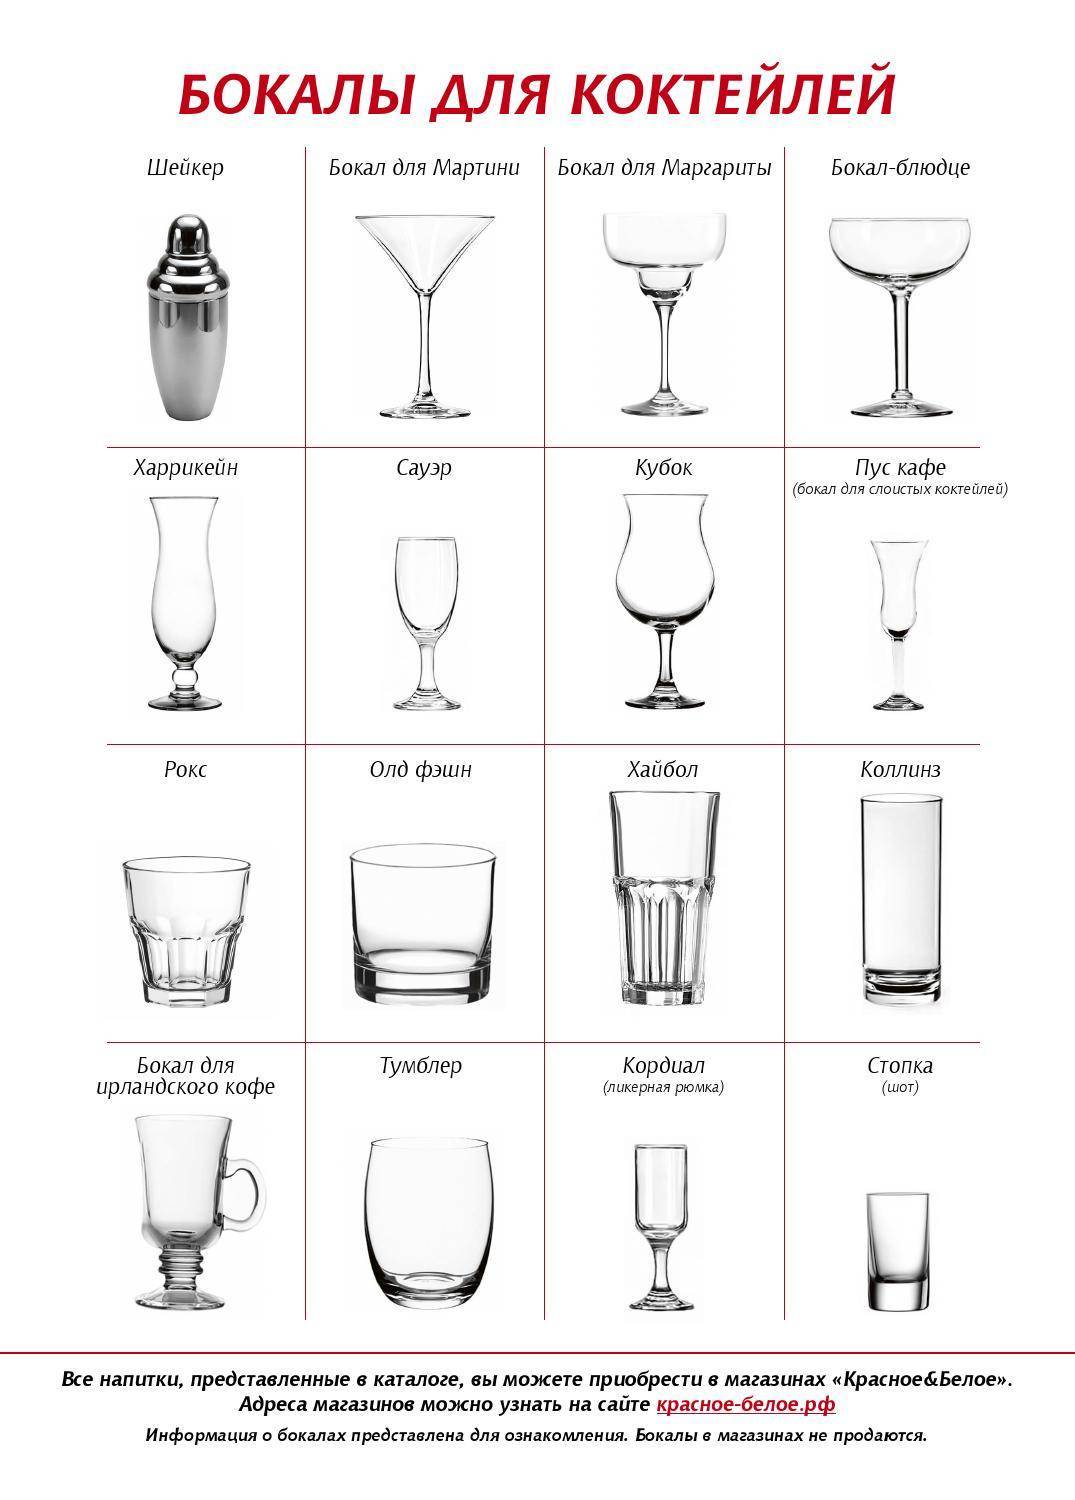 Как выбрать бокал для коктейлей - виды и особенности